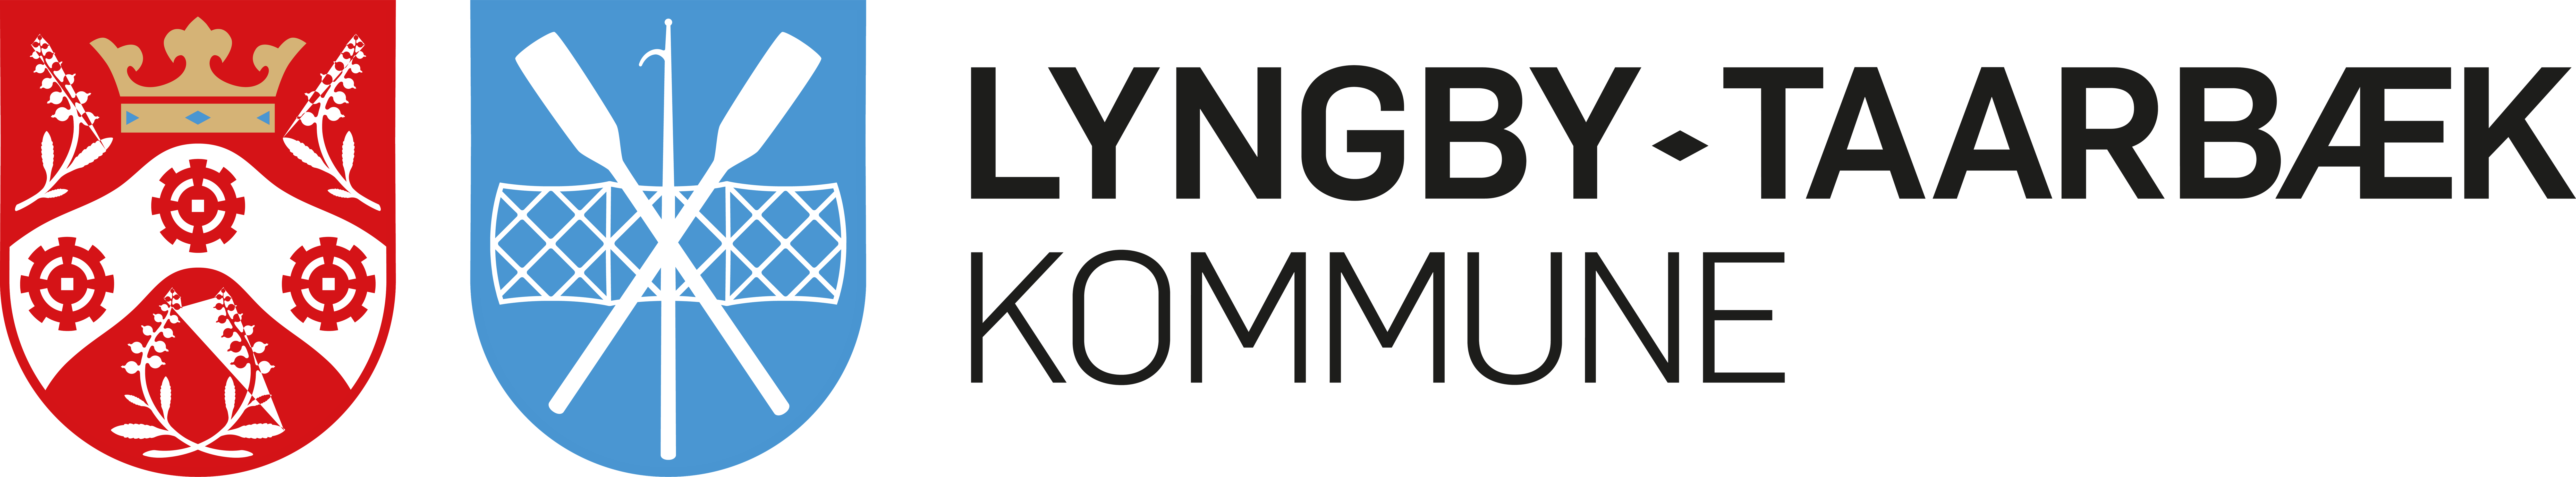 Ltk logo